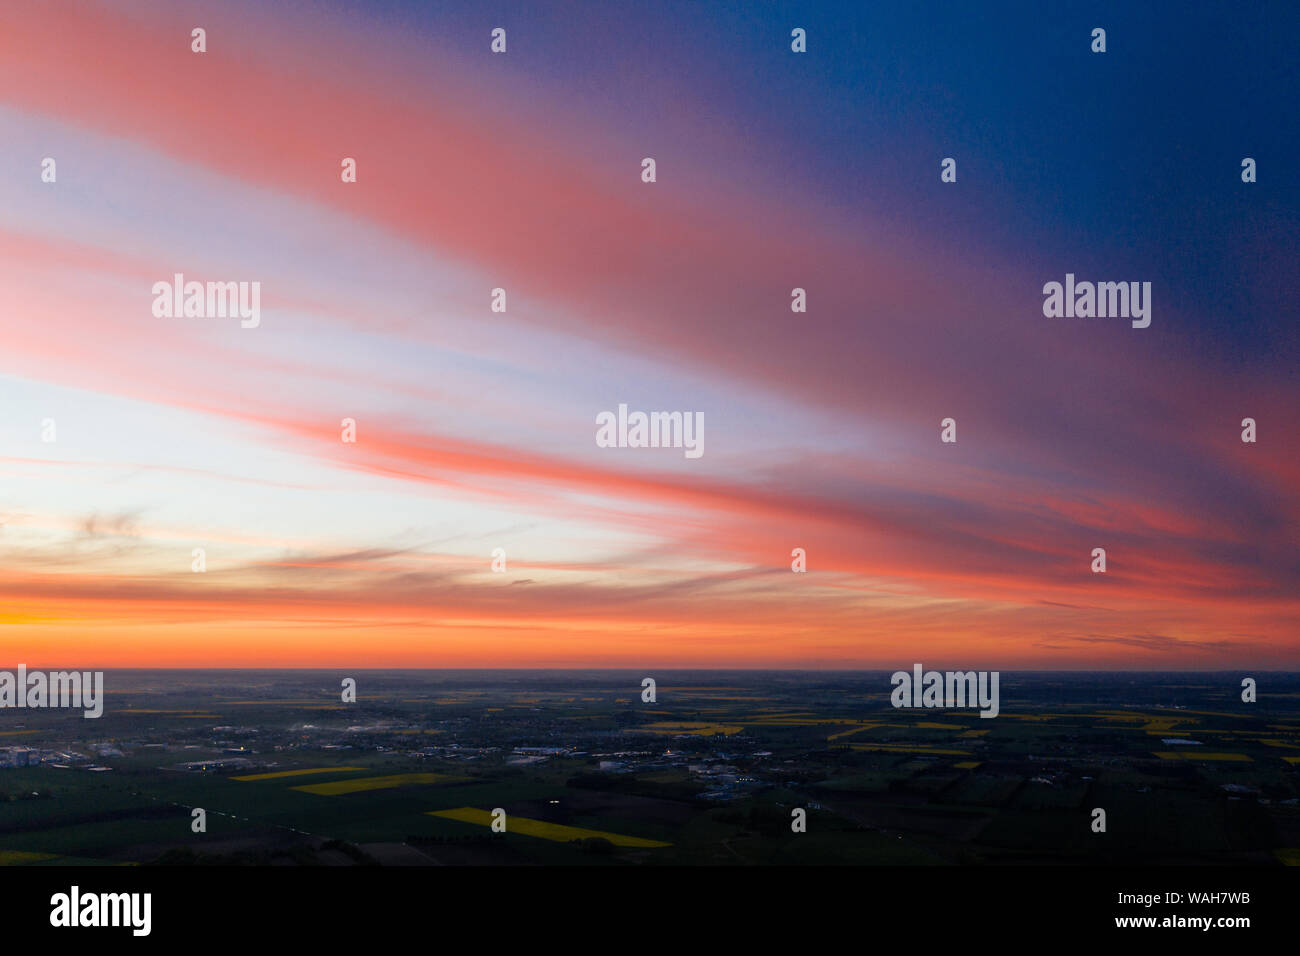 Antenne drone Fotografie von einem See Landschaft bei Sonnenuntergang. Wunderschöne und ruhige ländliche Landschaft. Stockfoto